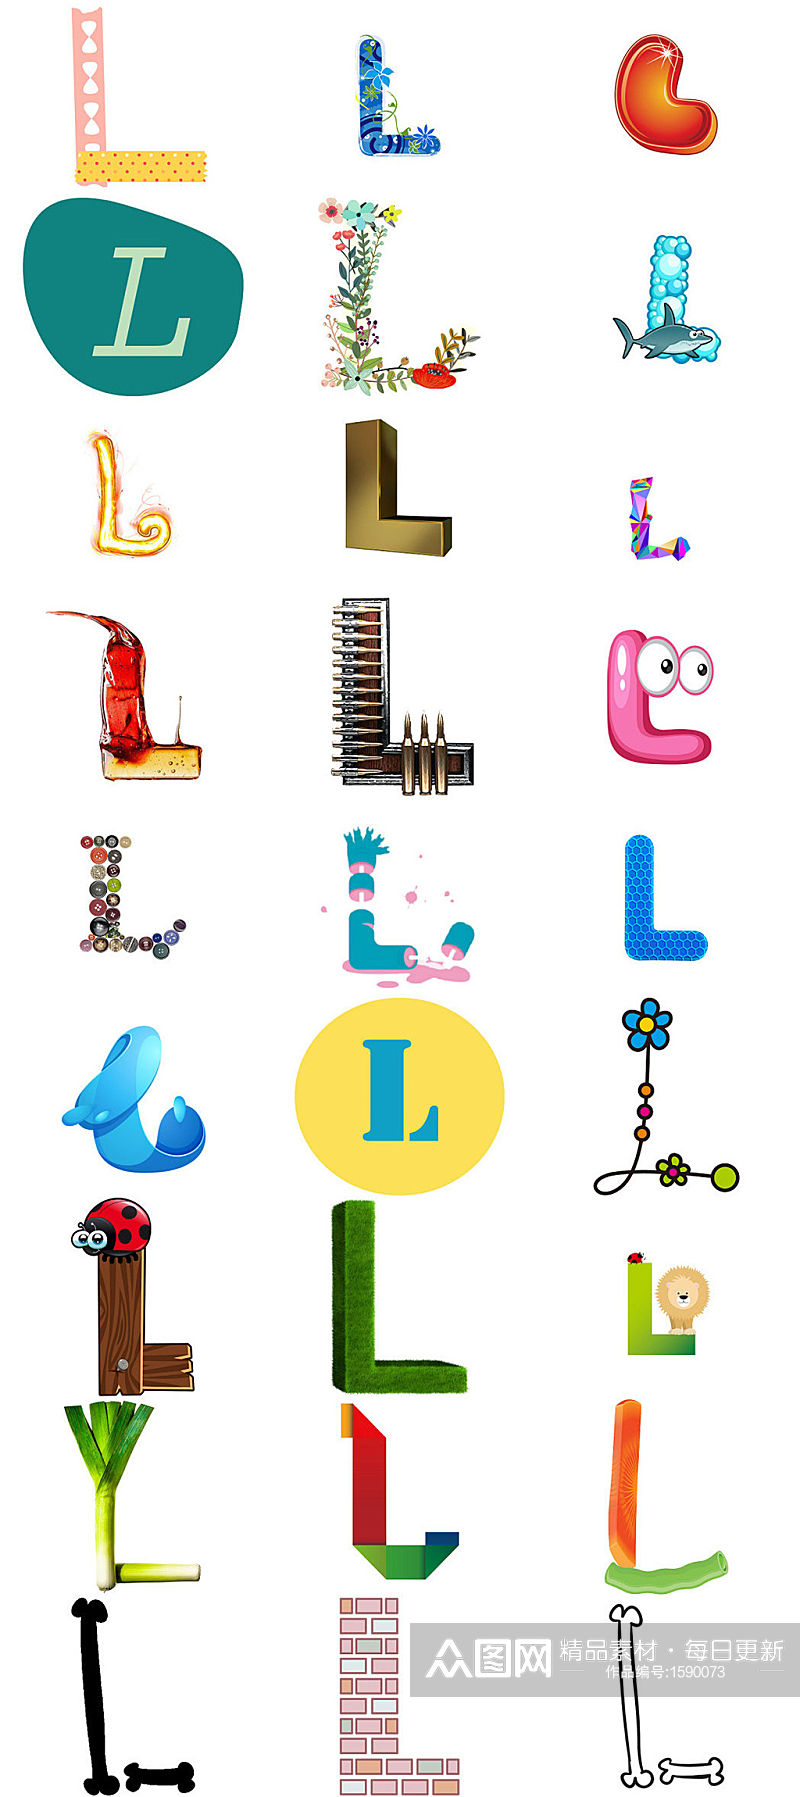 英文字母L形状字体设计模版素材